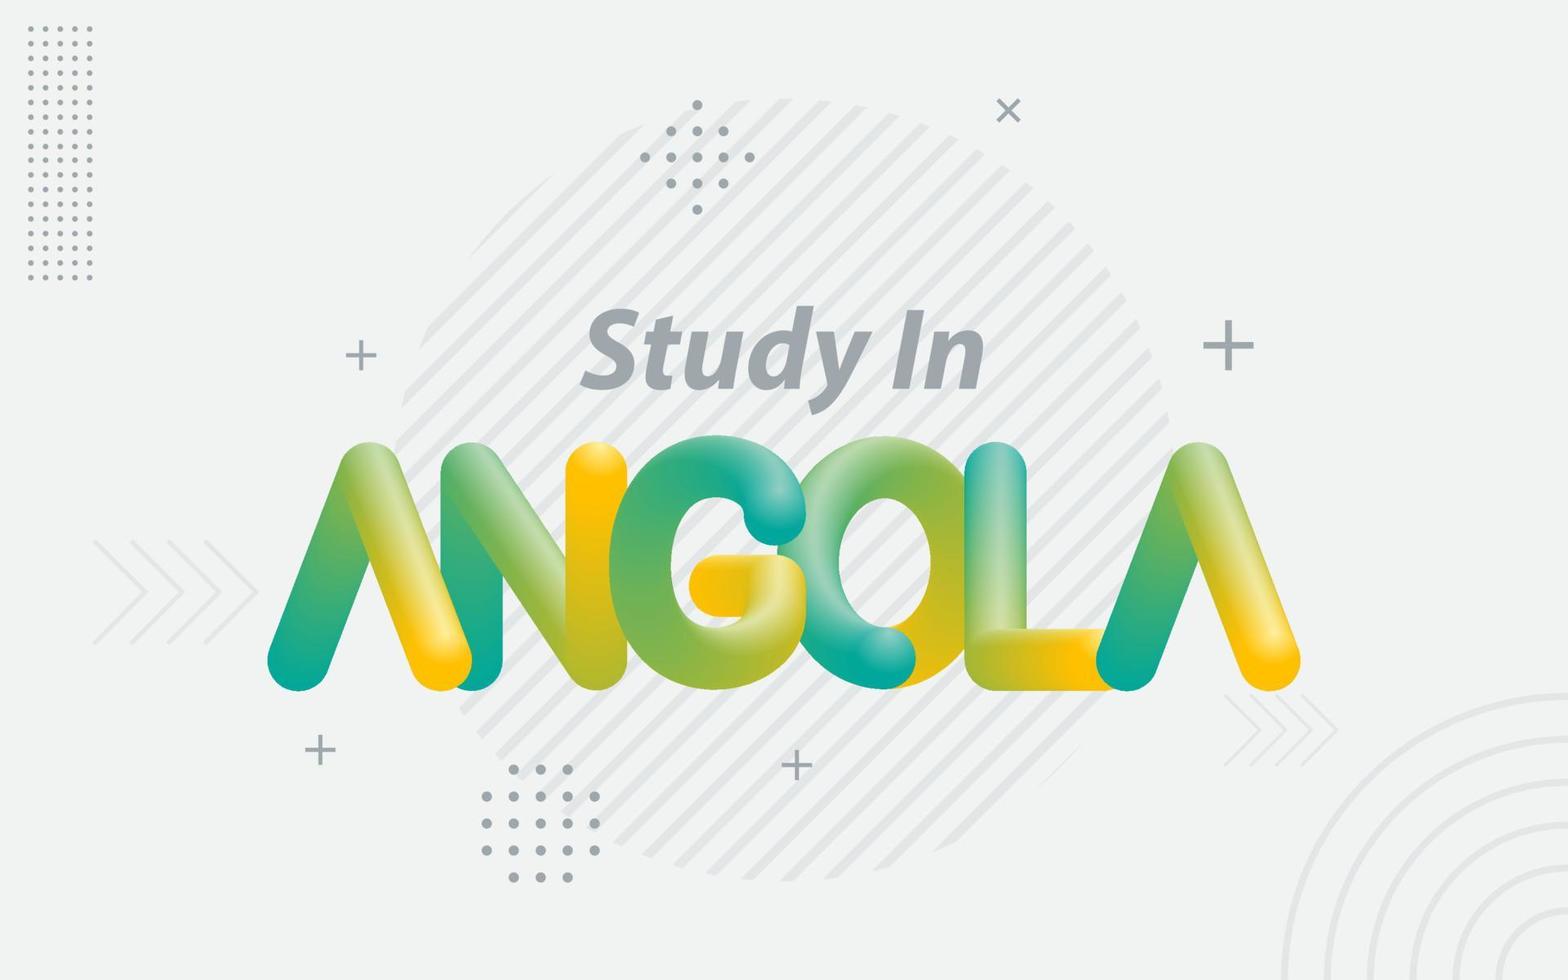 studie in Angola. creatief typografie met 3d mengsel effect vector